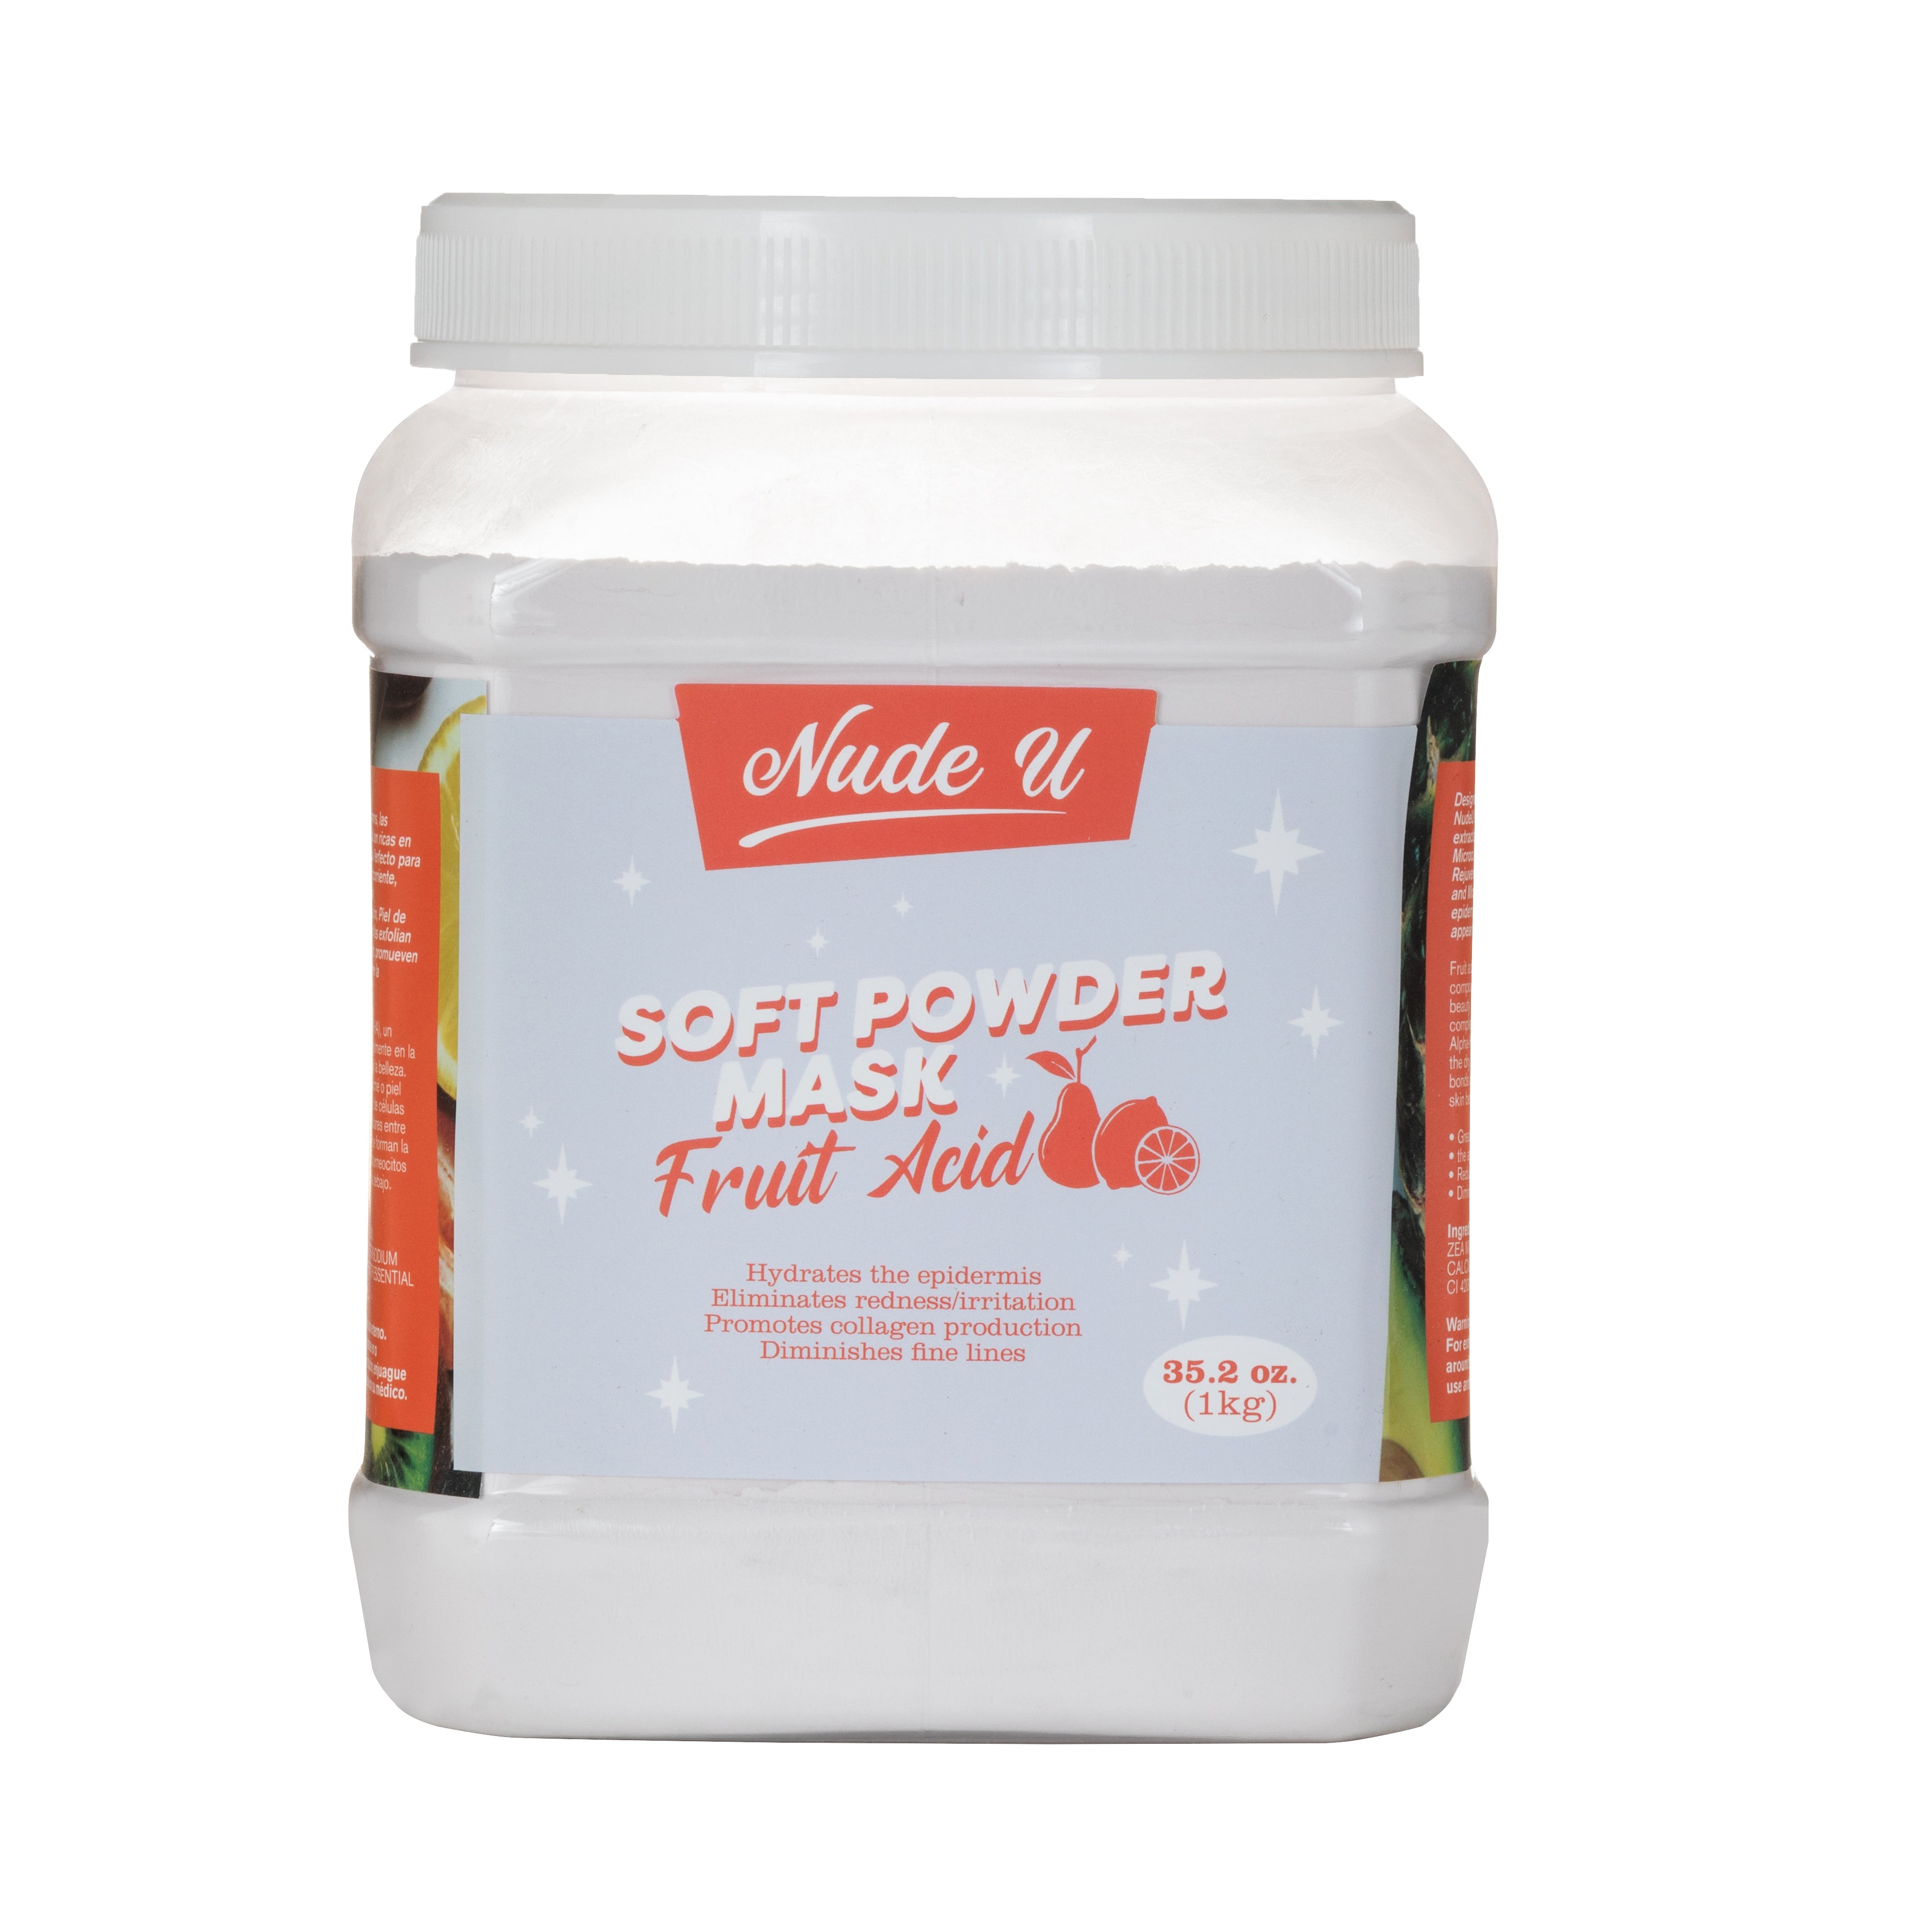 Fruit acid soft powder mask